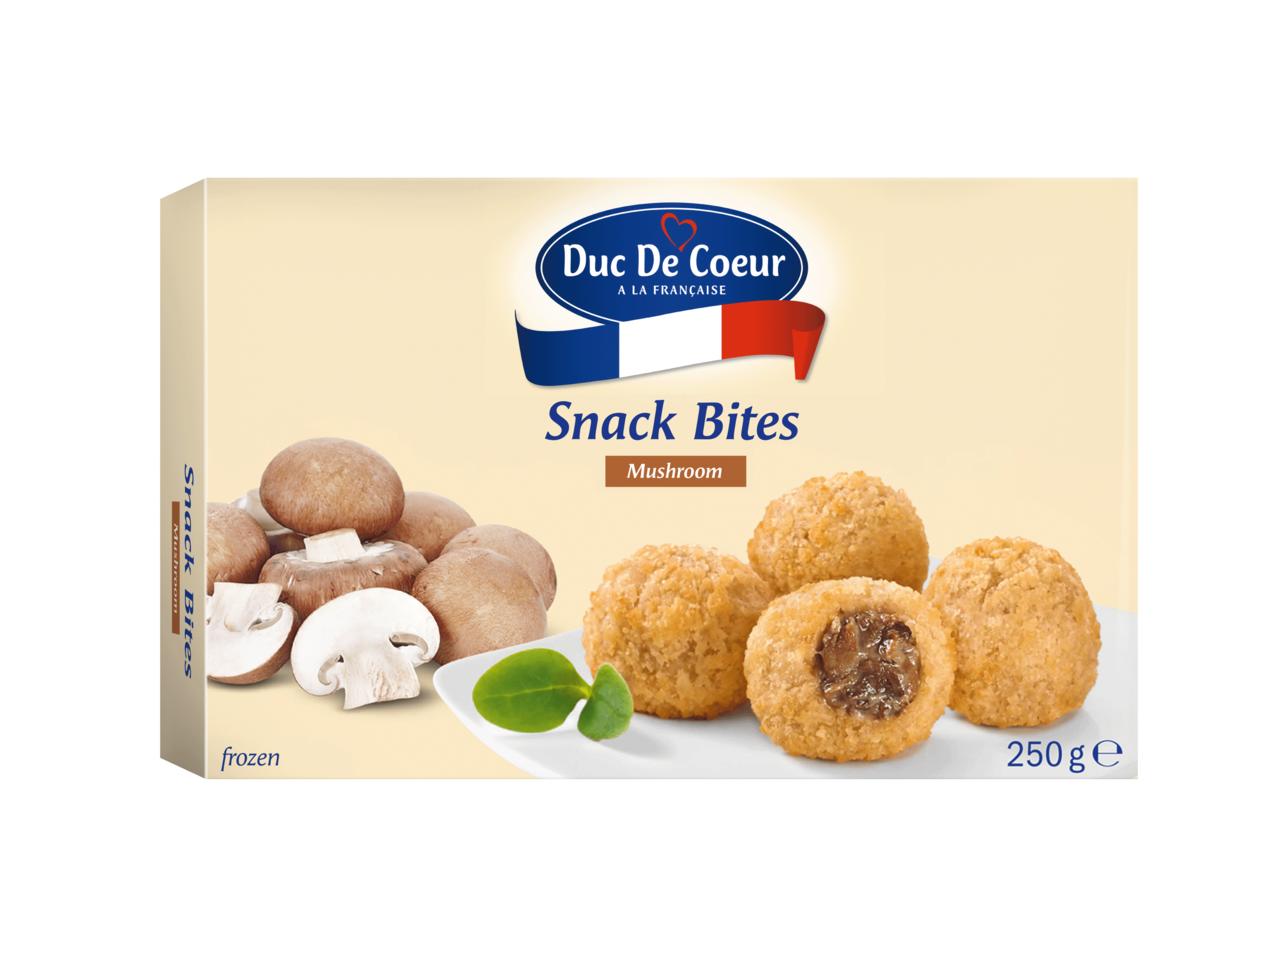 DUC DE COEUR Snack Bites